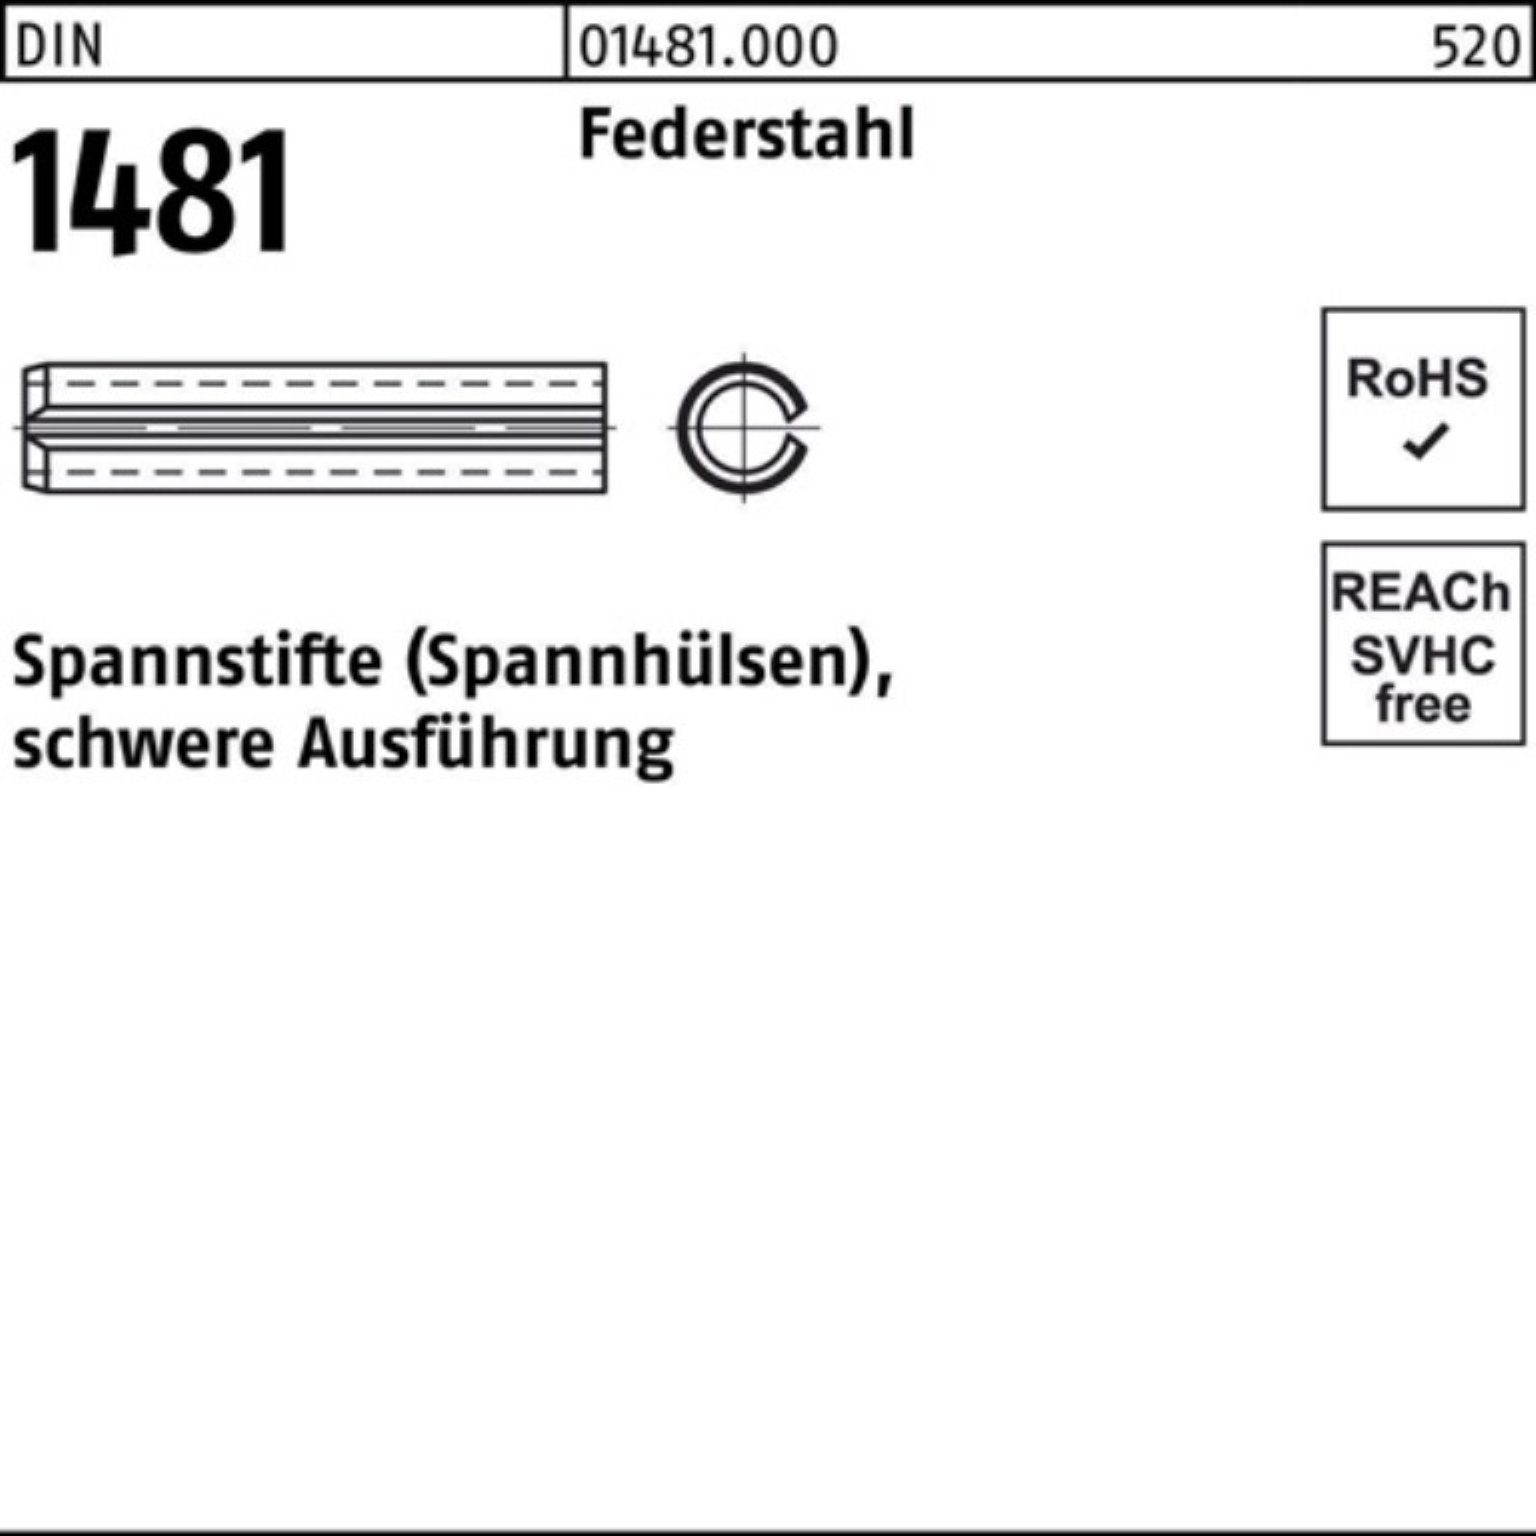 Reyher Spannstift 100er Pack Spannstift DIN 1481 14x 100 Federstahl schwere Ausführung